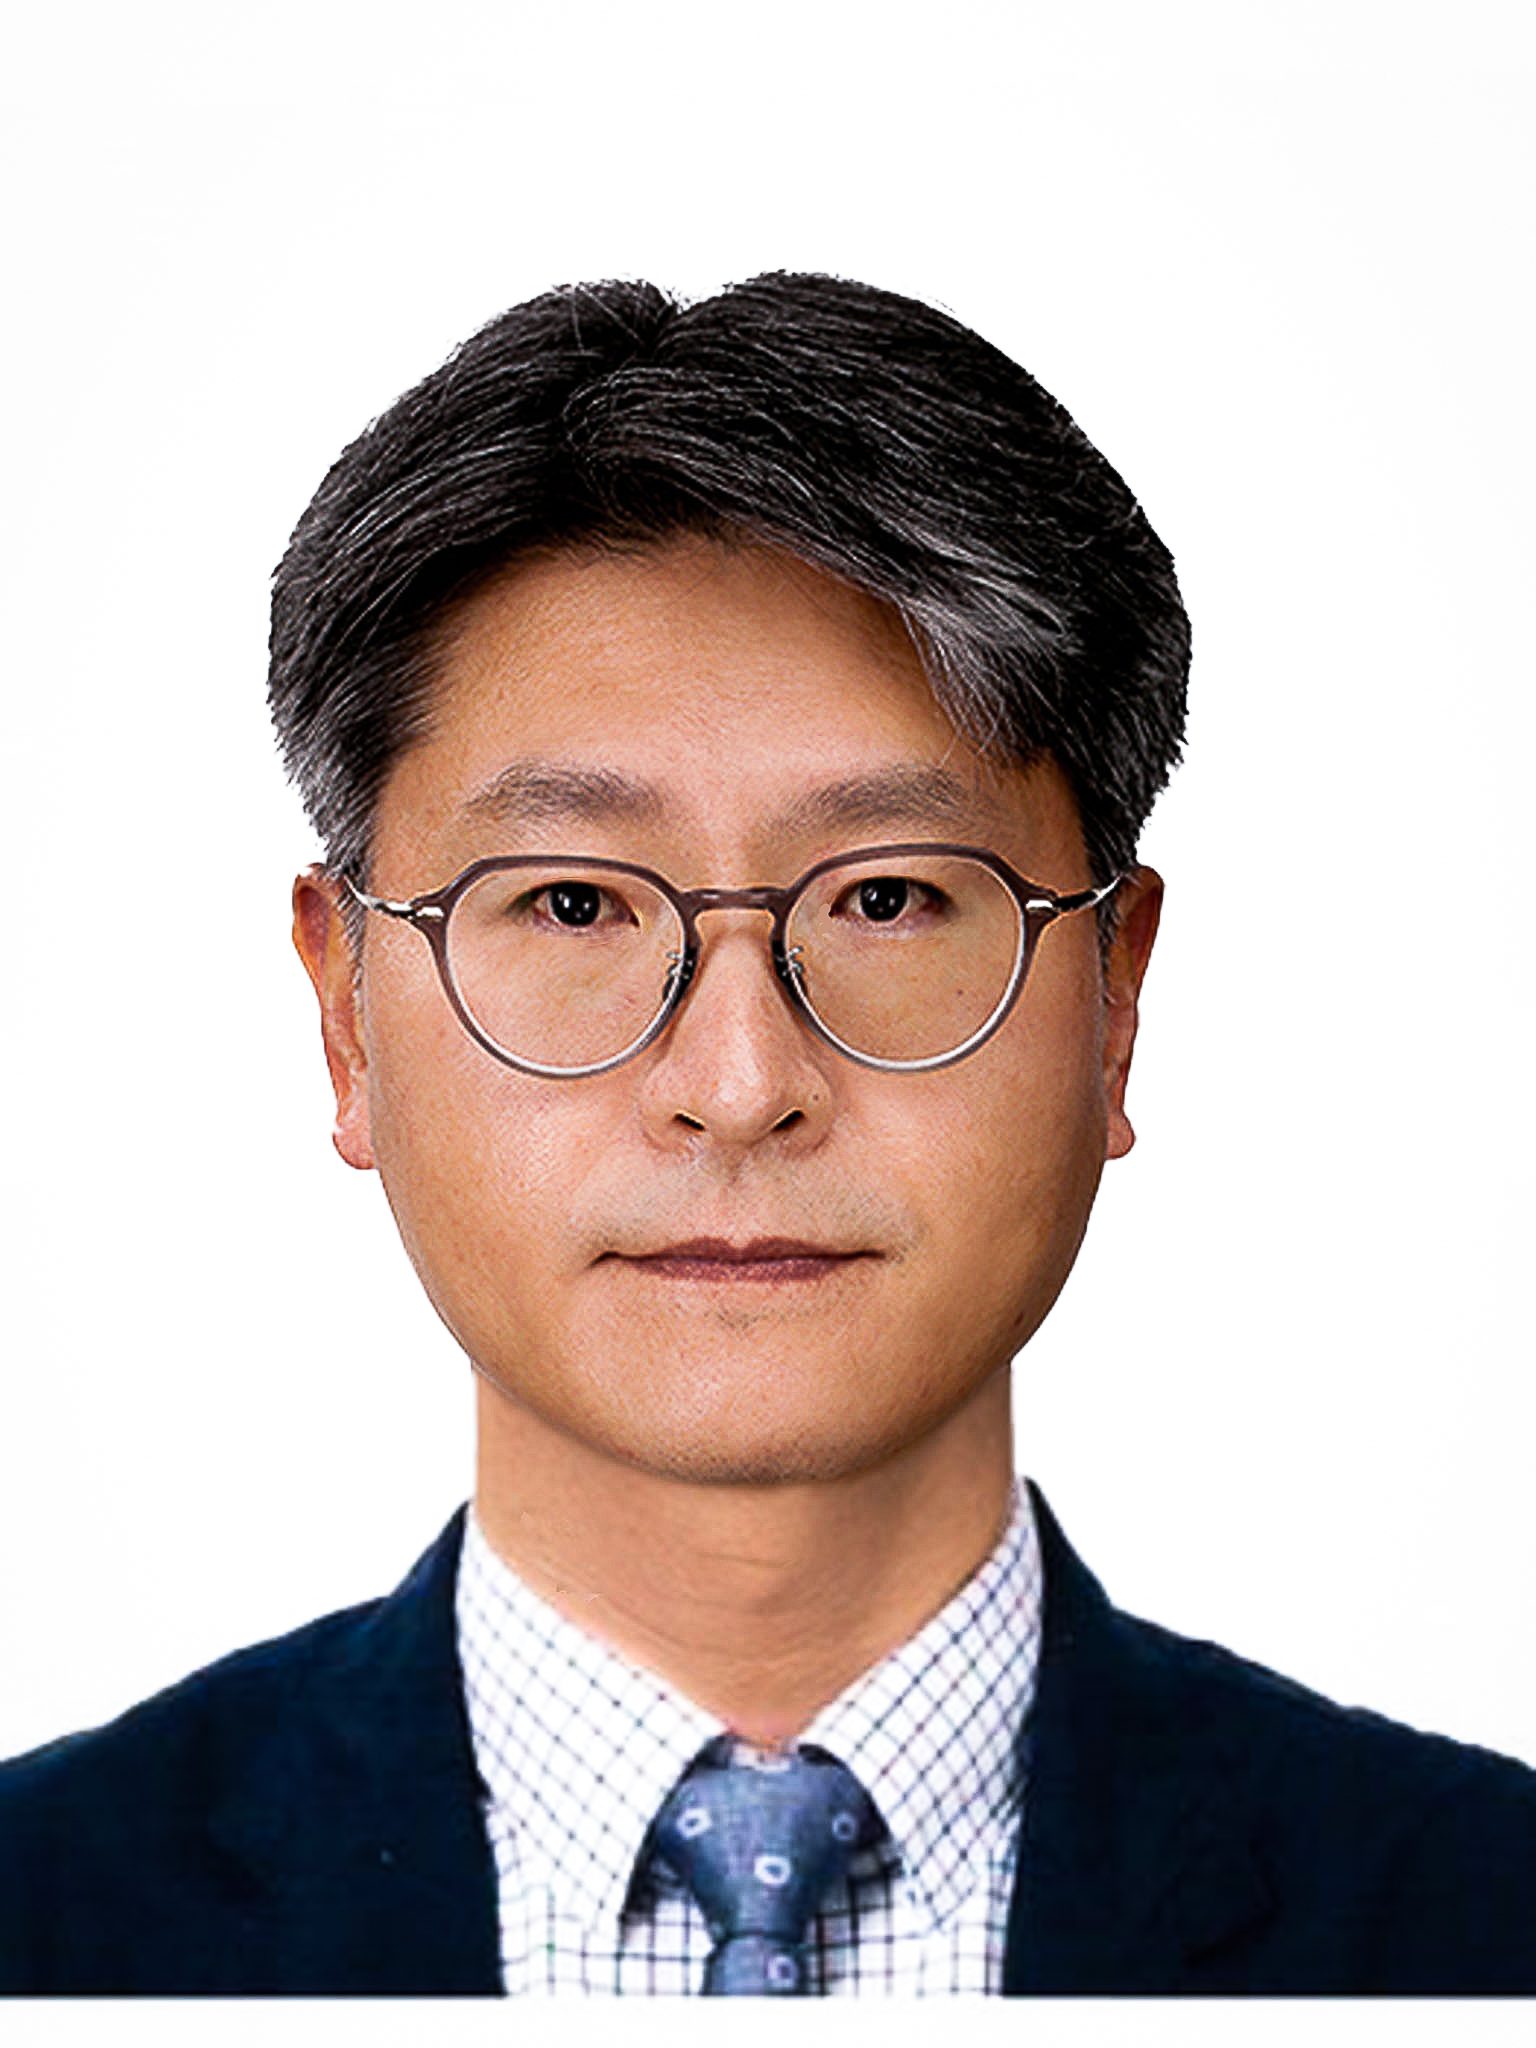 김형섭 교수